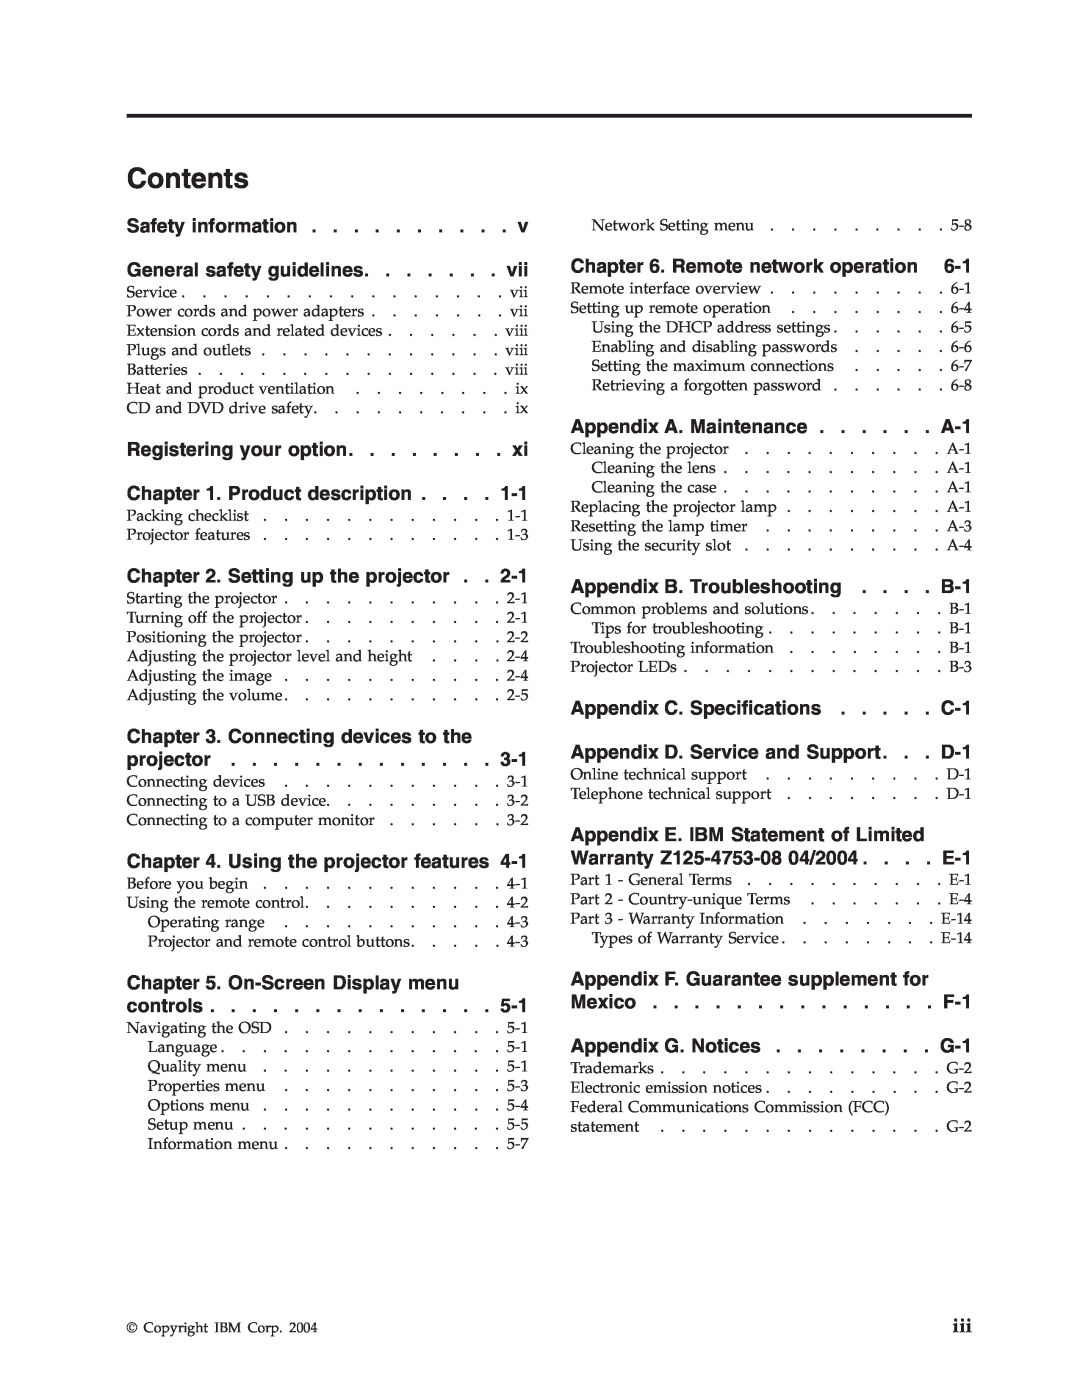 IBM PROJECTOR C400 manual Contents 